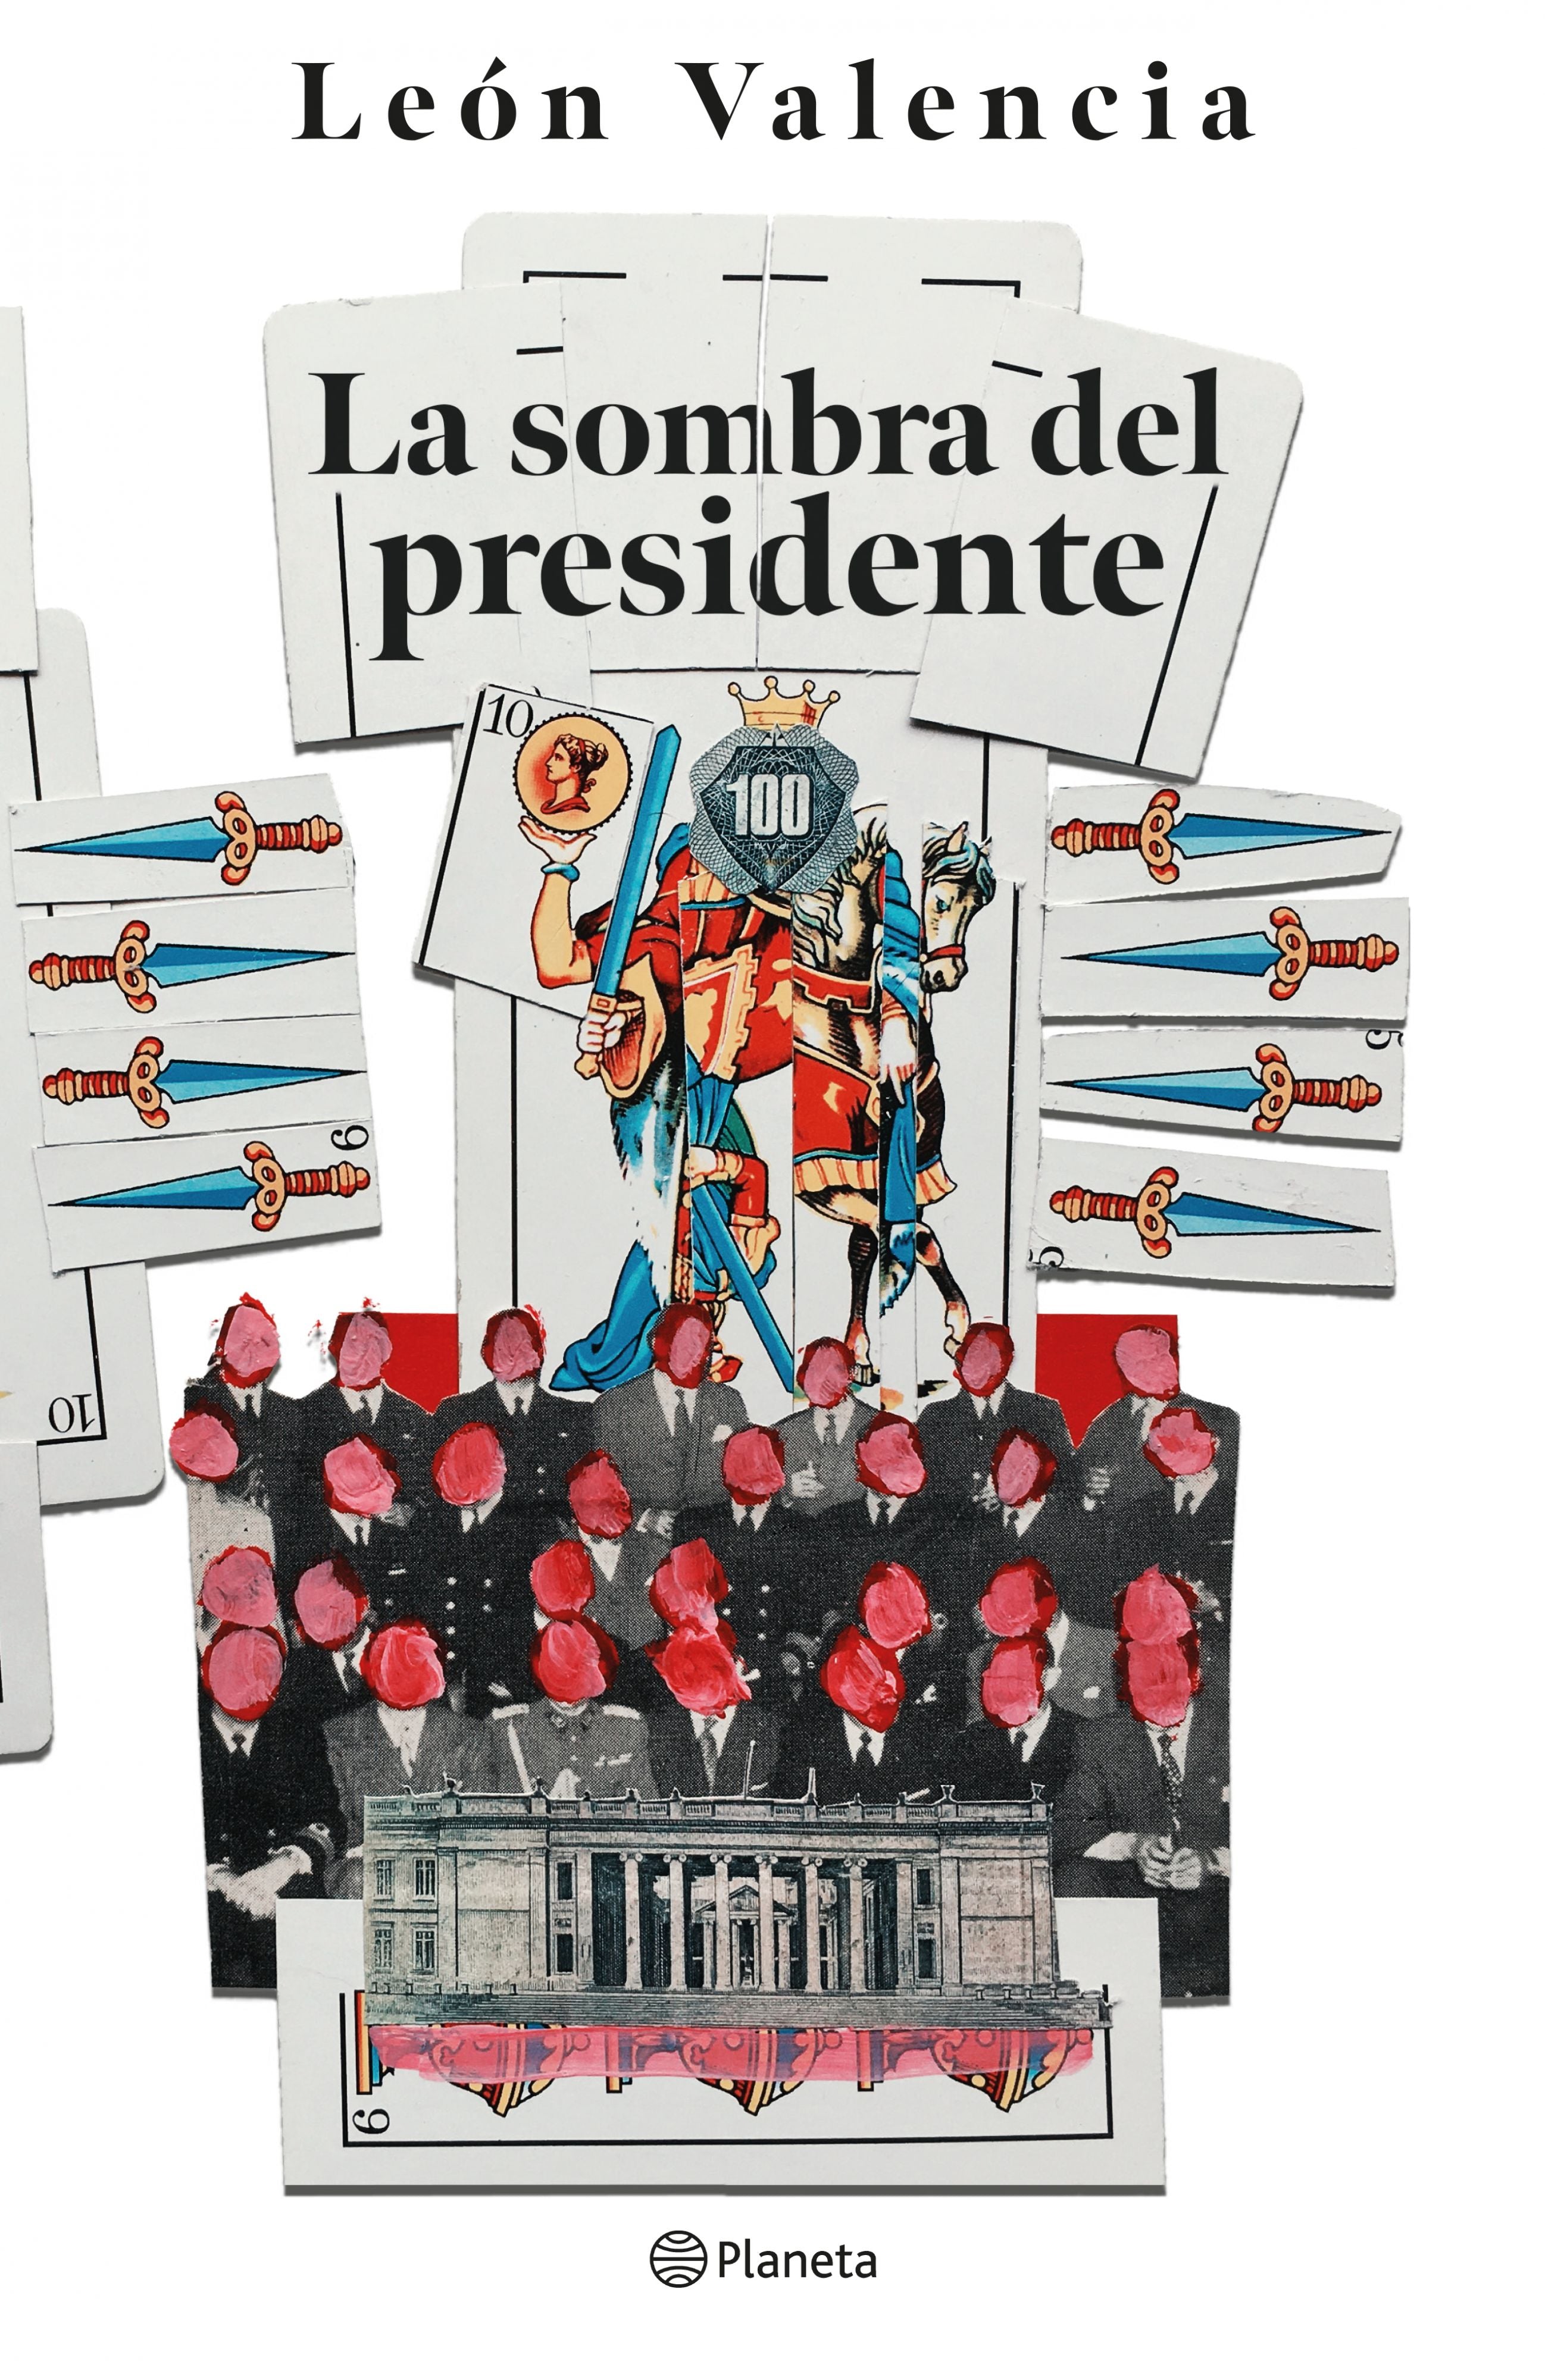 Libro León Valencia - La sombra del presidente